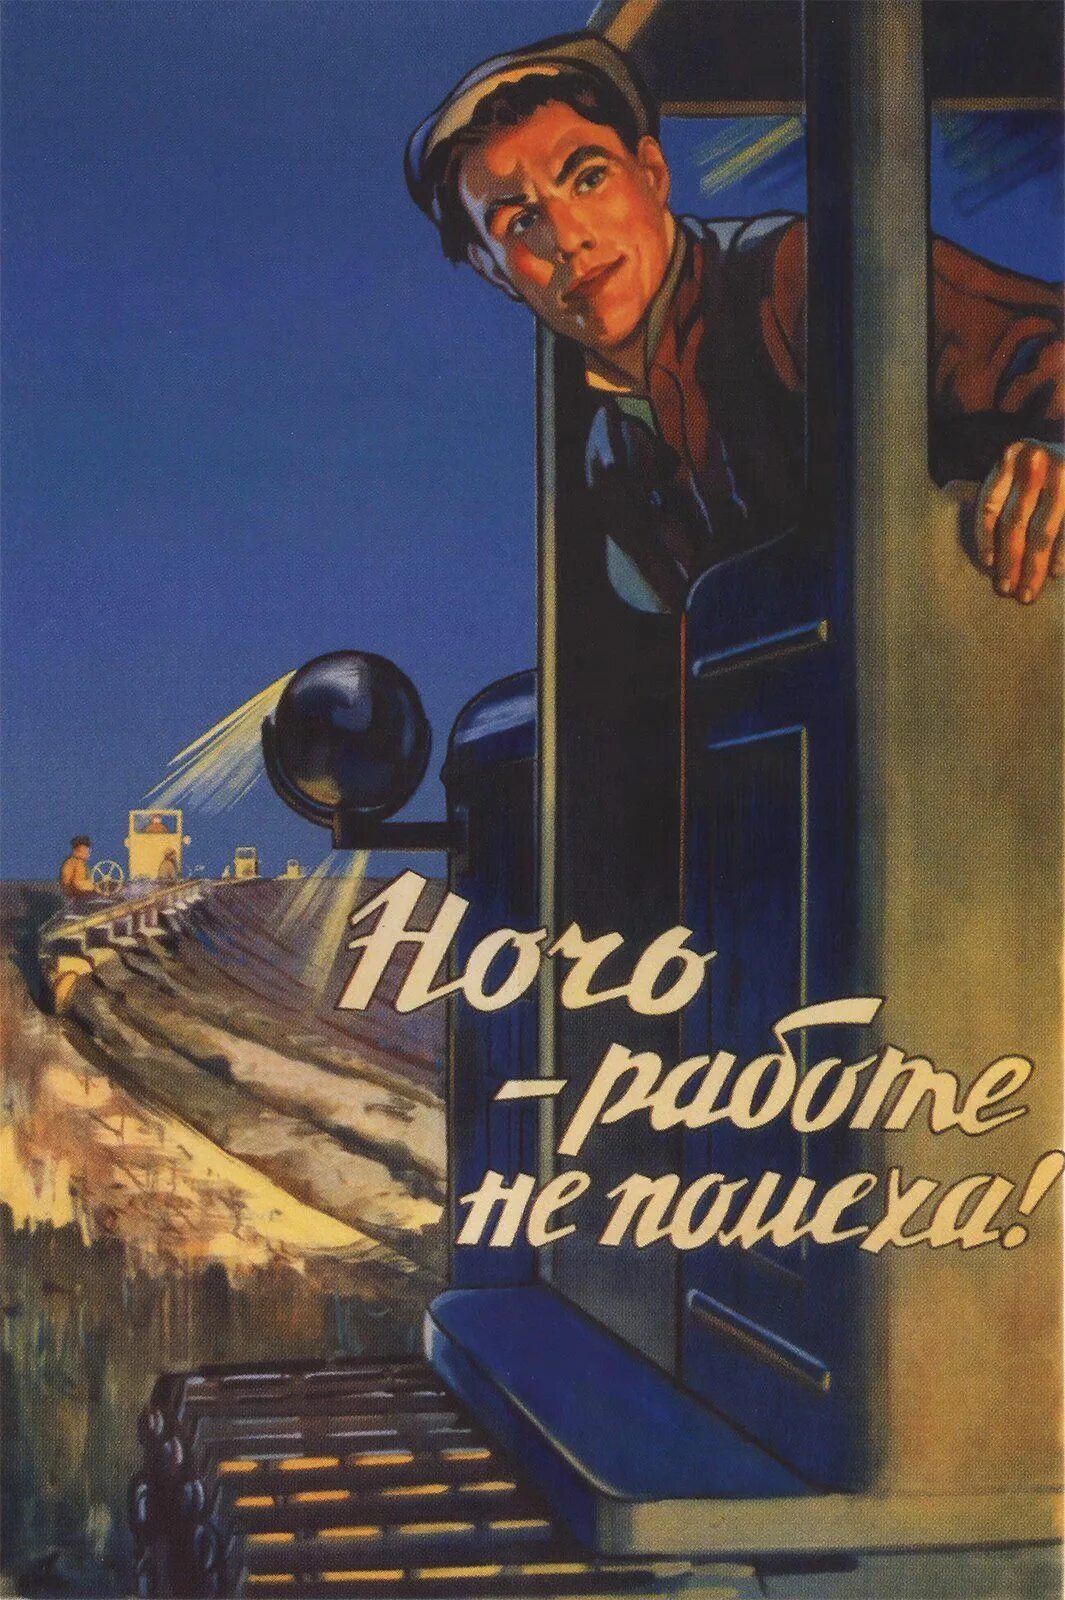 Класс рабочий пашет днем и ночью песня. Советские плакаты. Ночь работе не помеха. Плакат ночь работе не помеха. Советские плакаты про работу и труд.